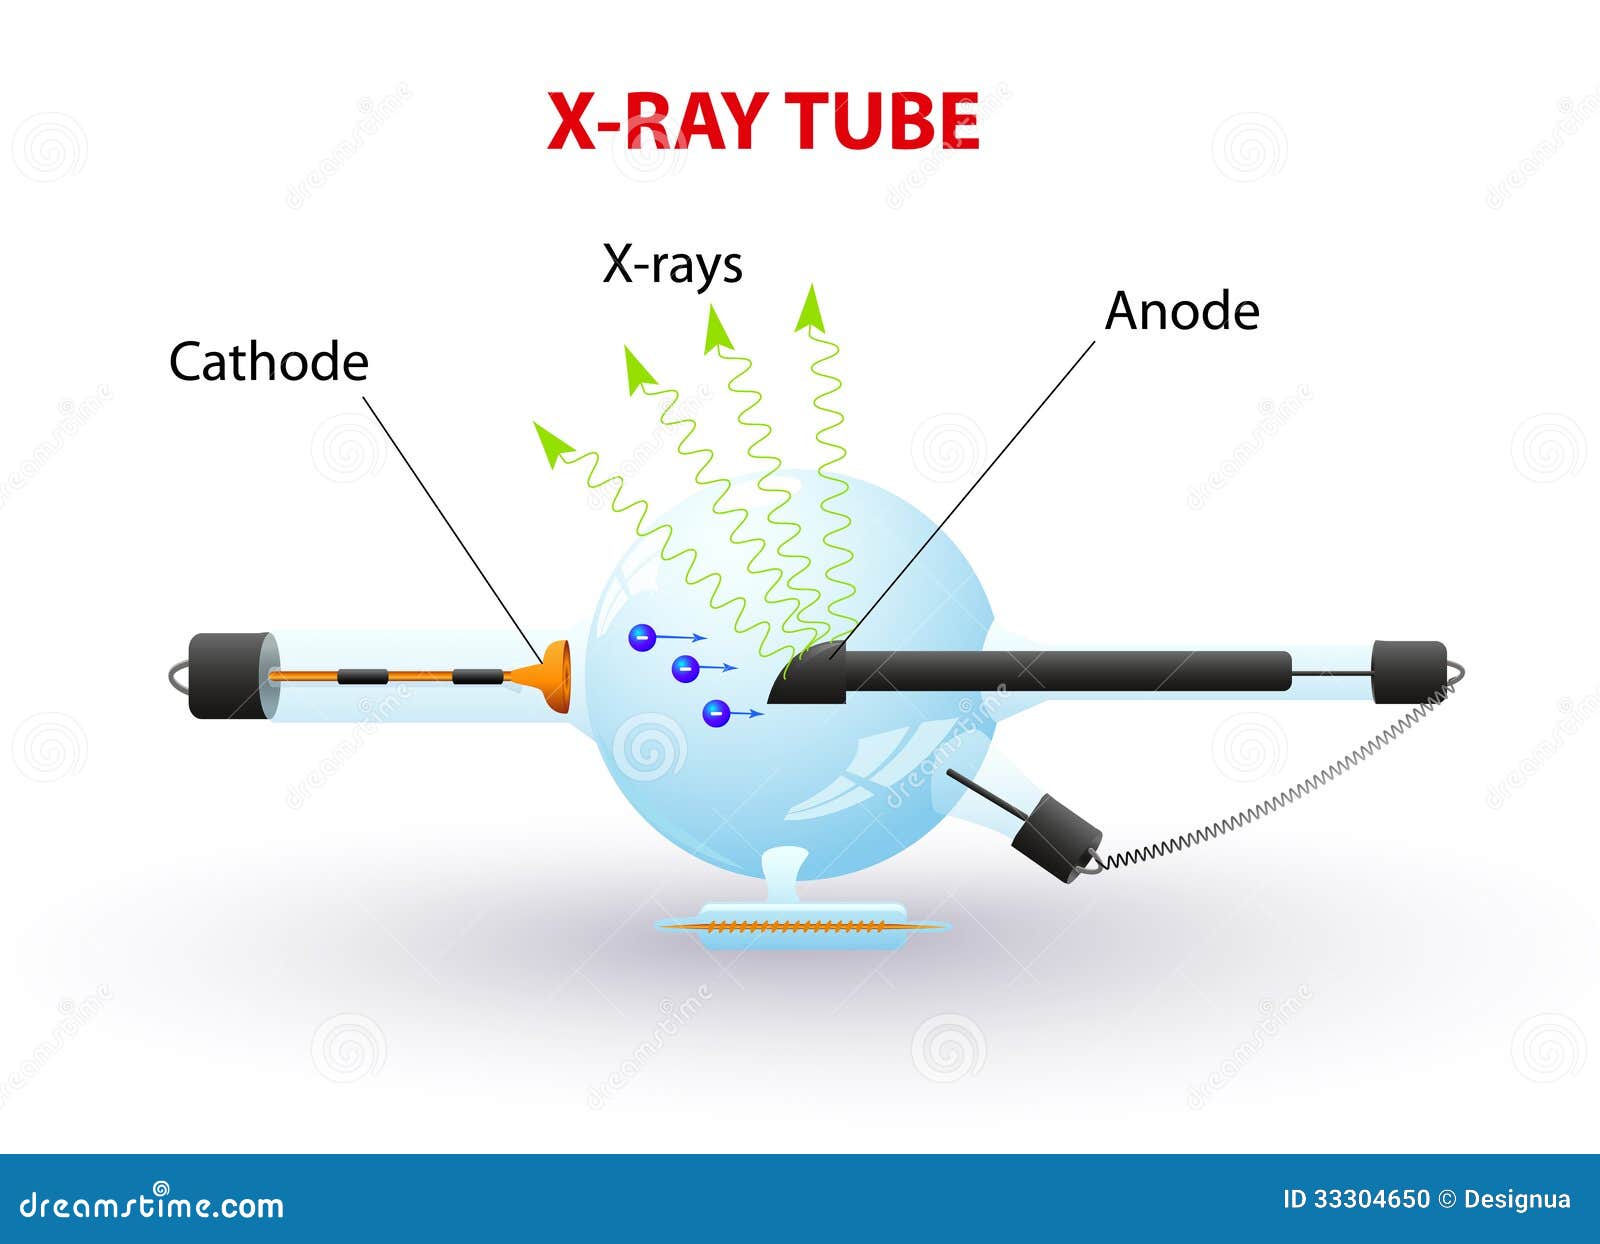 x-ray tube